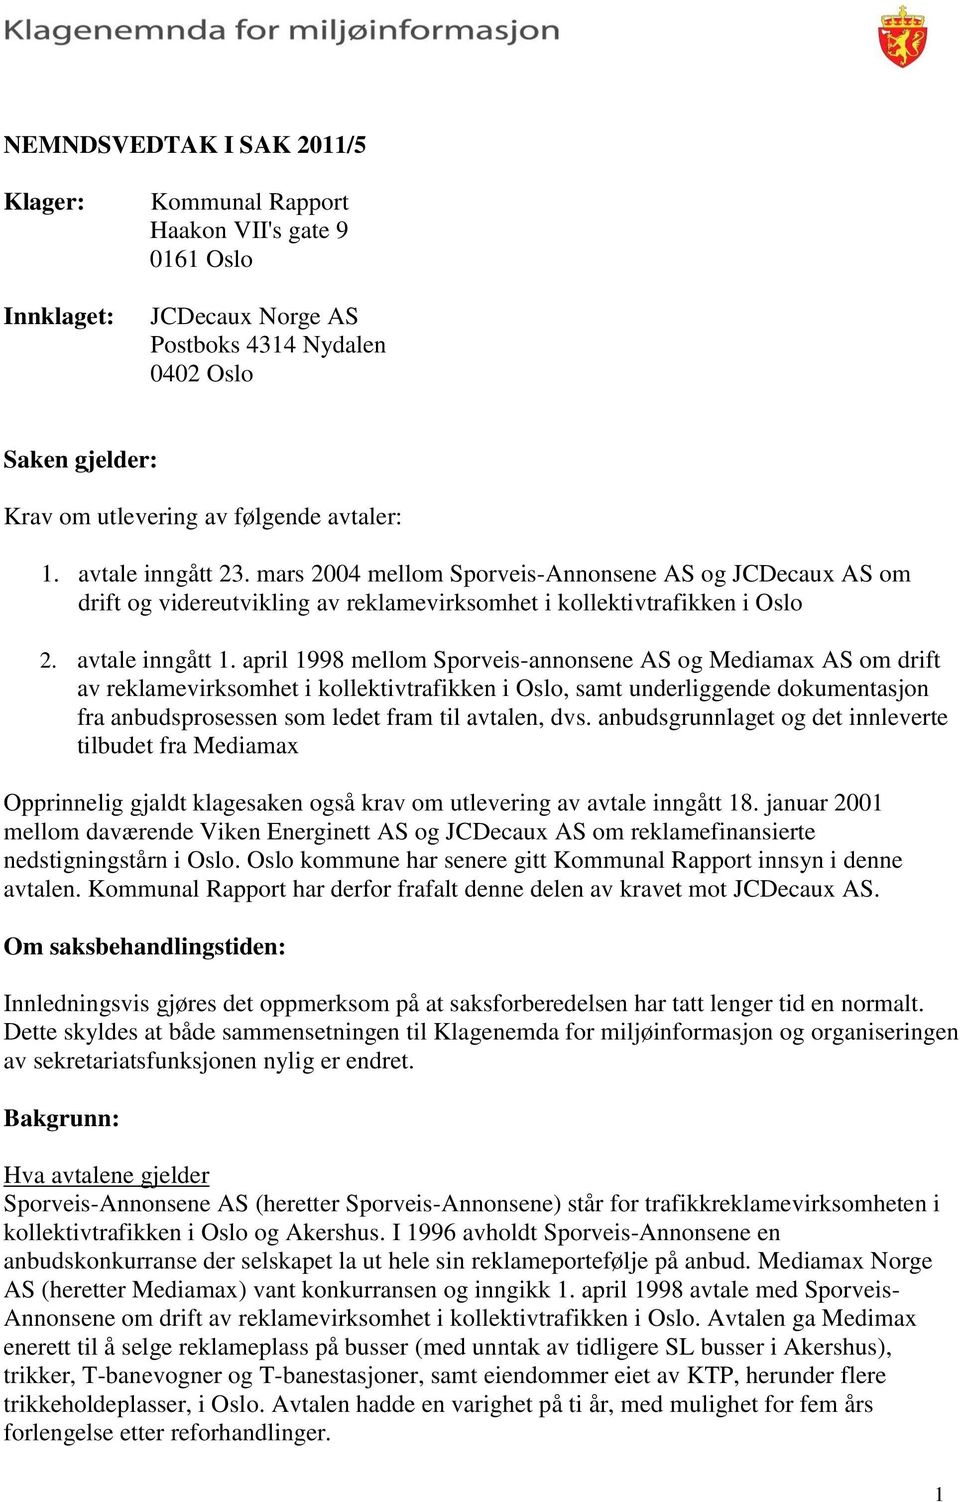 april 1998 mellom Sporveis-annonsene AS og Mediamax AS om drift av reklamevirksomhet i kollektivtrafikken i Oslo, samt underliggende dokumentasjon fra anbudsprosessen som ledet fram til avtalen, dvs.